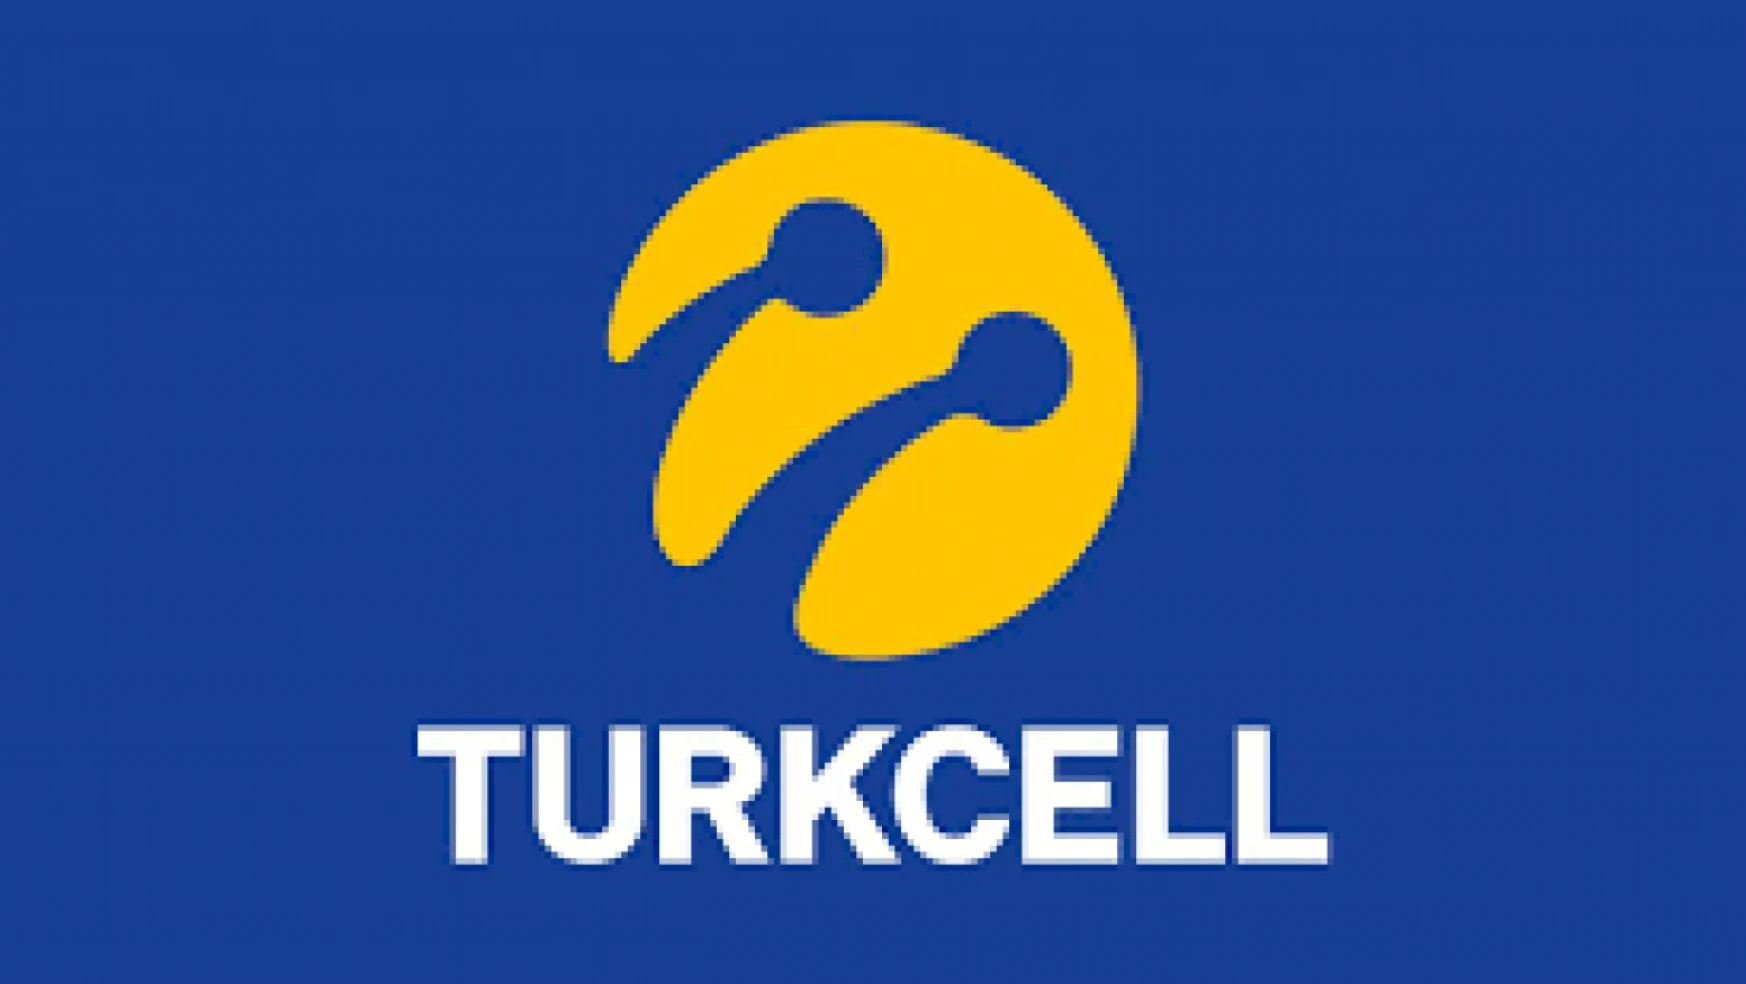 Turkcell Yönetim Kurulu Üyelerine kritik ayrıcalıklar verildi